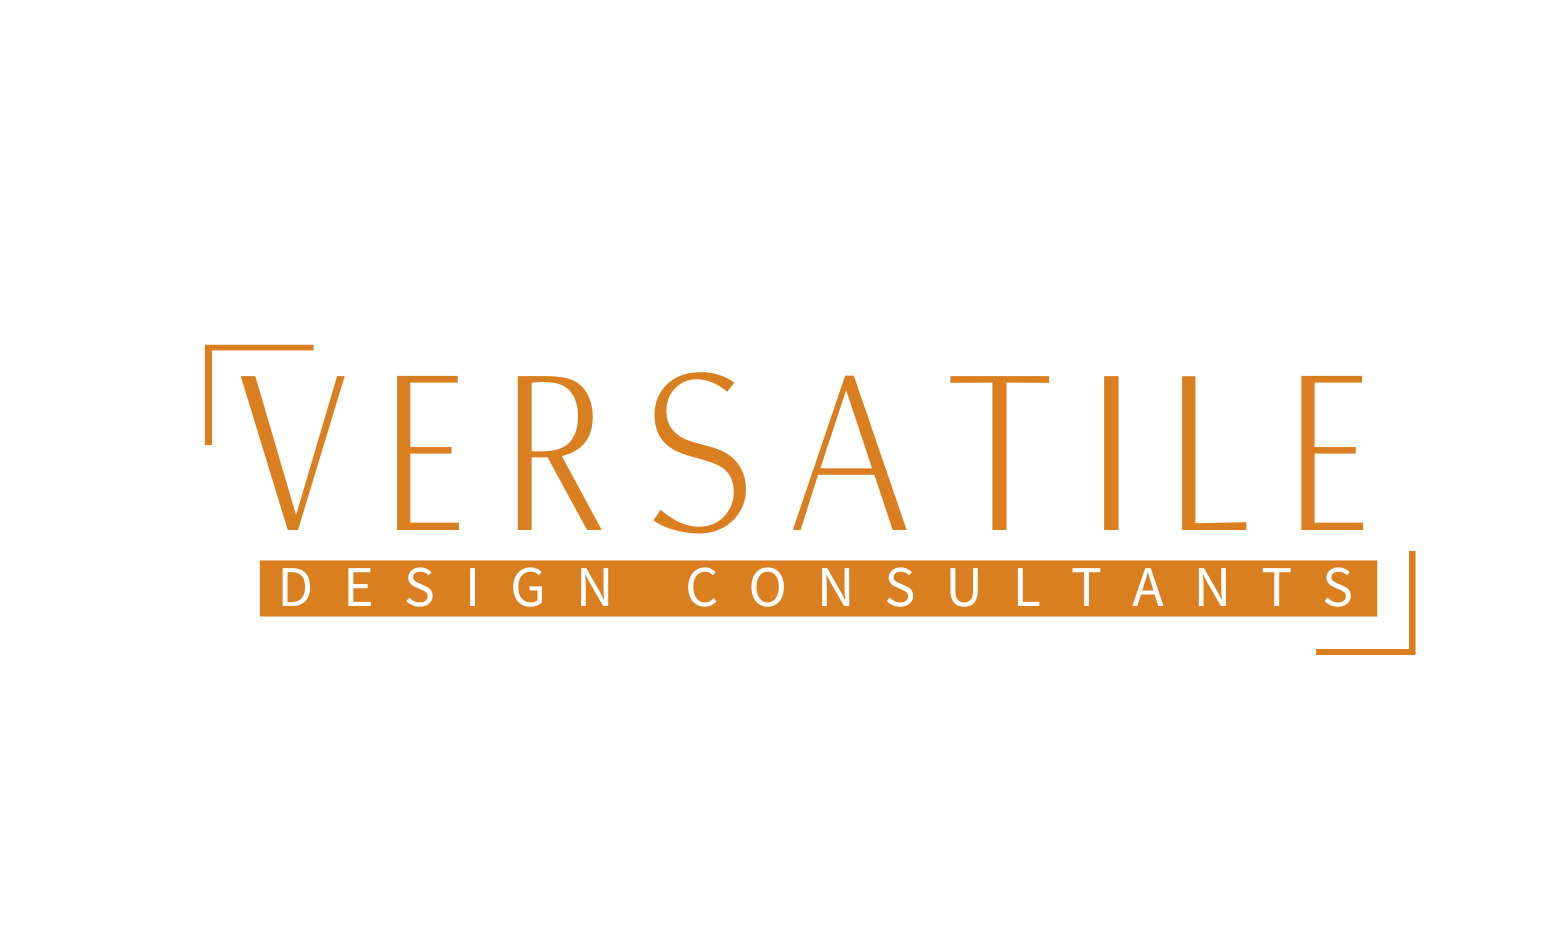 Versatile Design Consultants